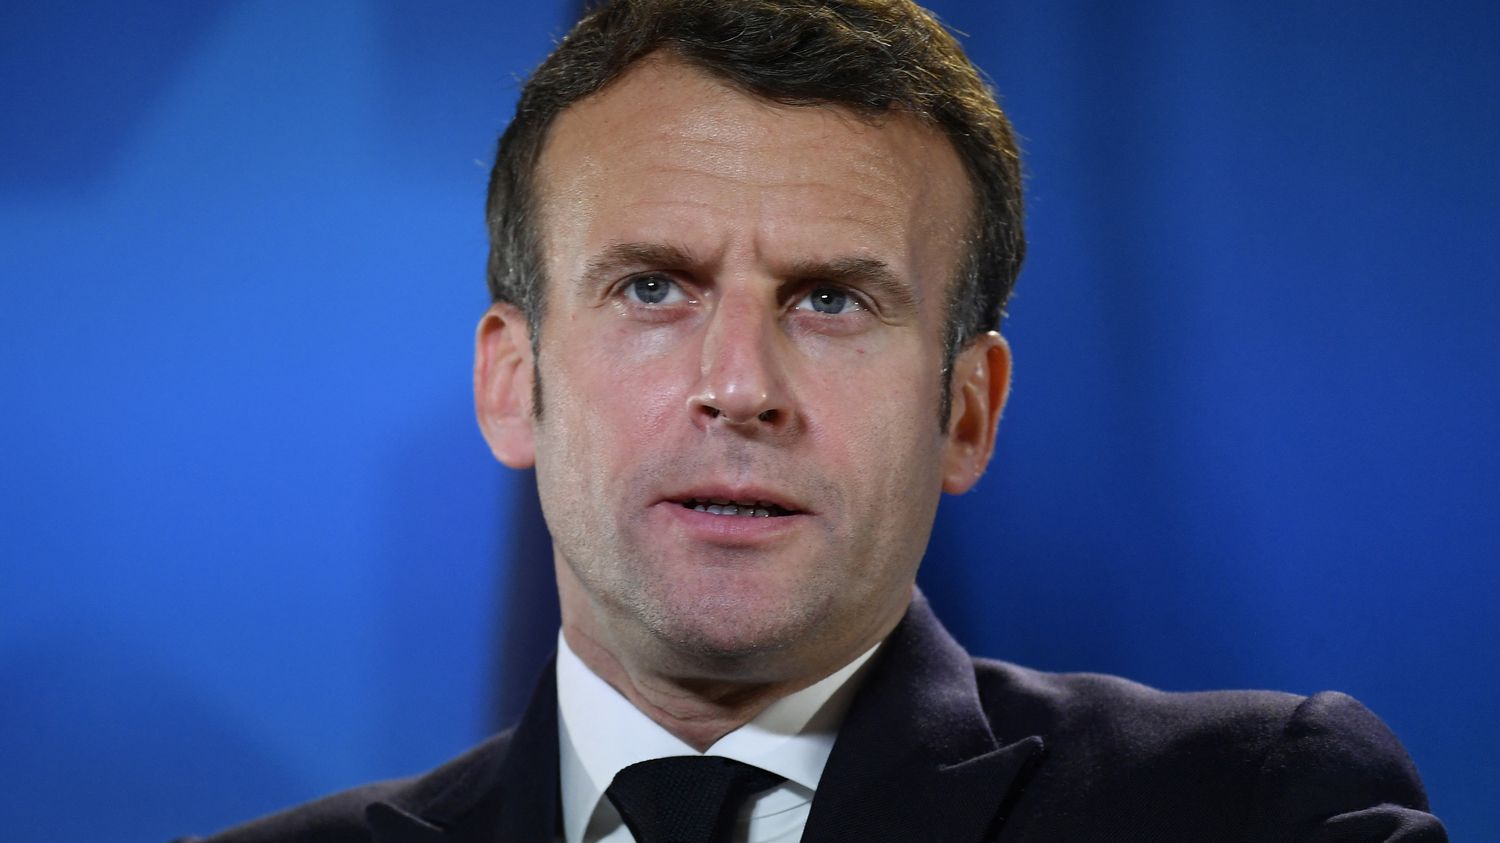 Corporatismes, immigration, "gilets jaunes"... Ce qu'il faut retenir de l'interview d'Emmanuel Macron à "Zadig"